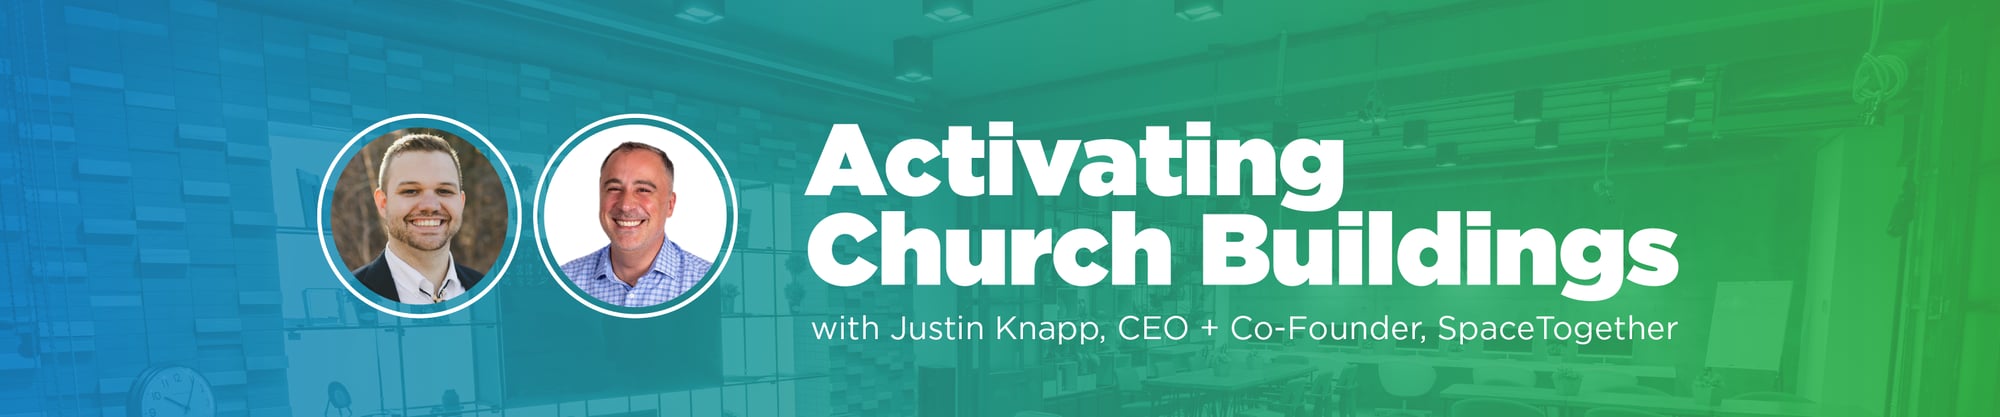 Activating Church Buildings_Knapp_Web Header